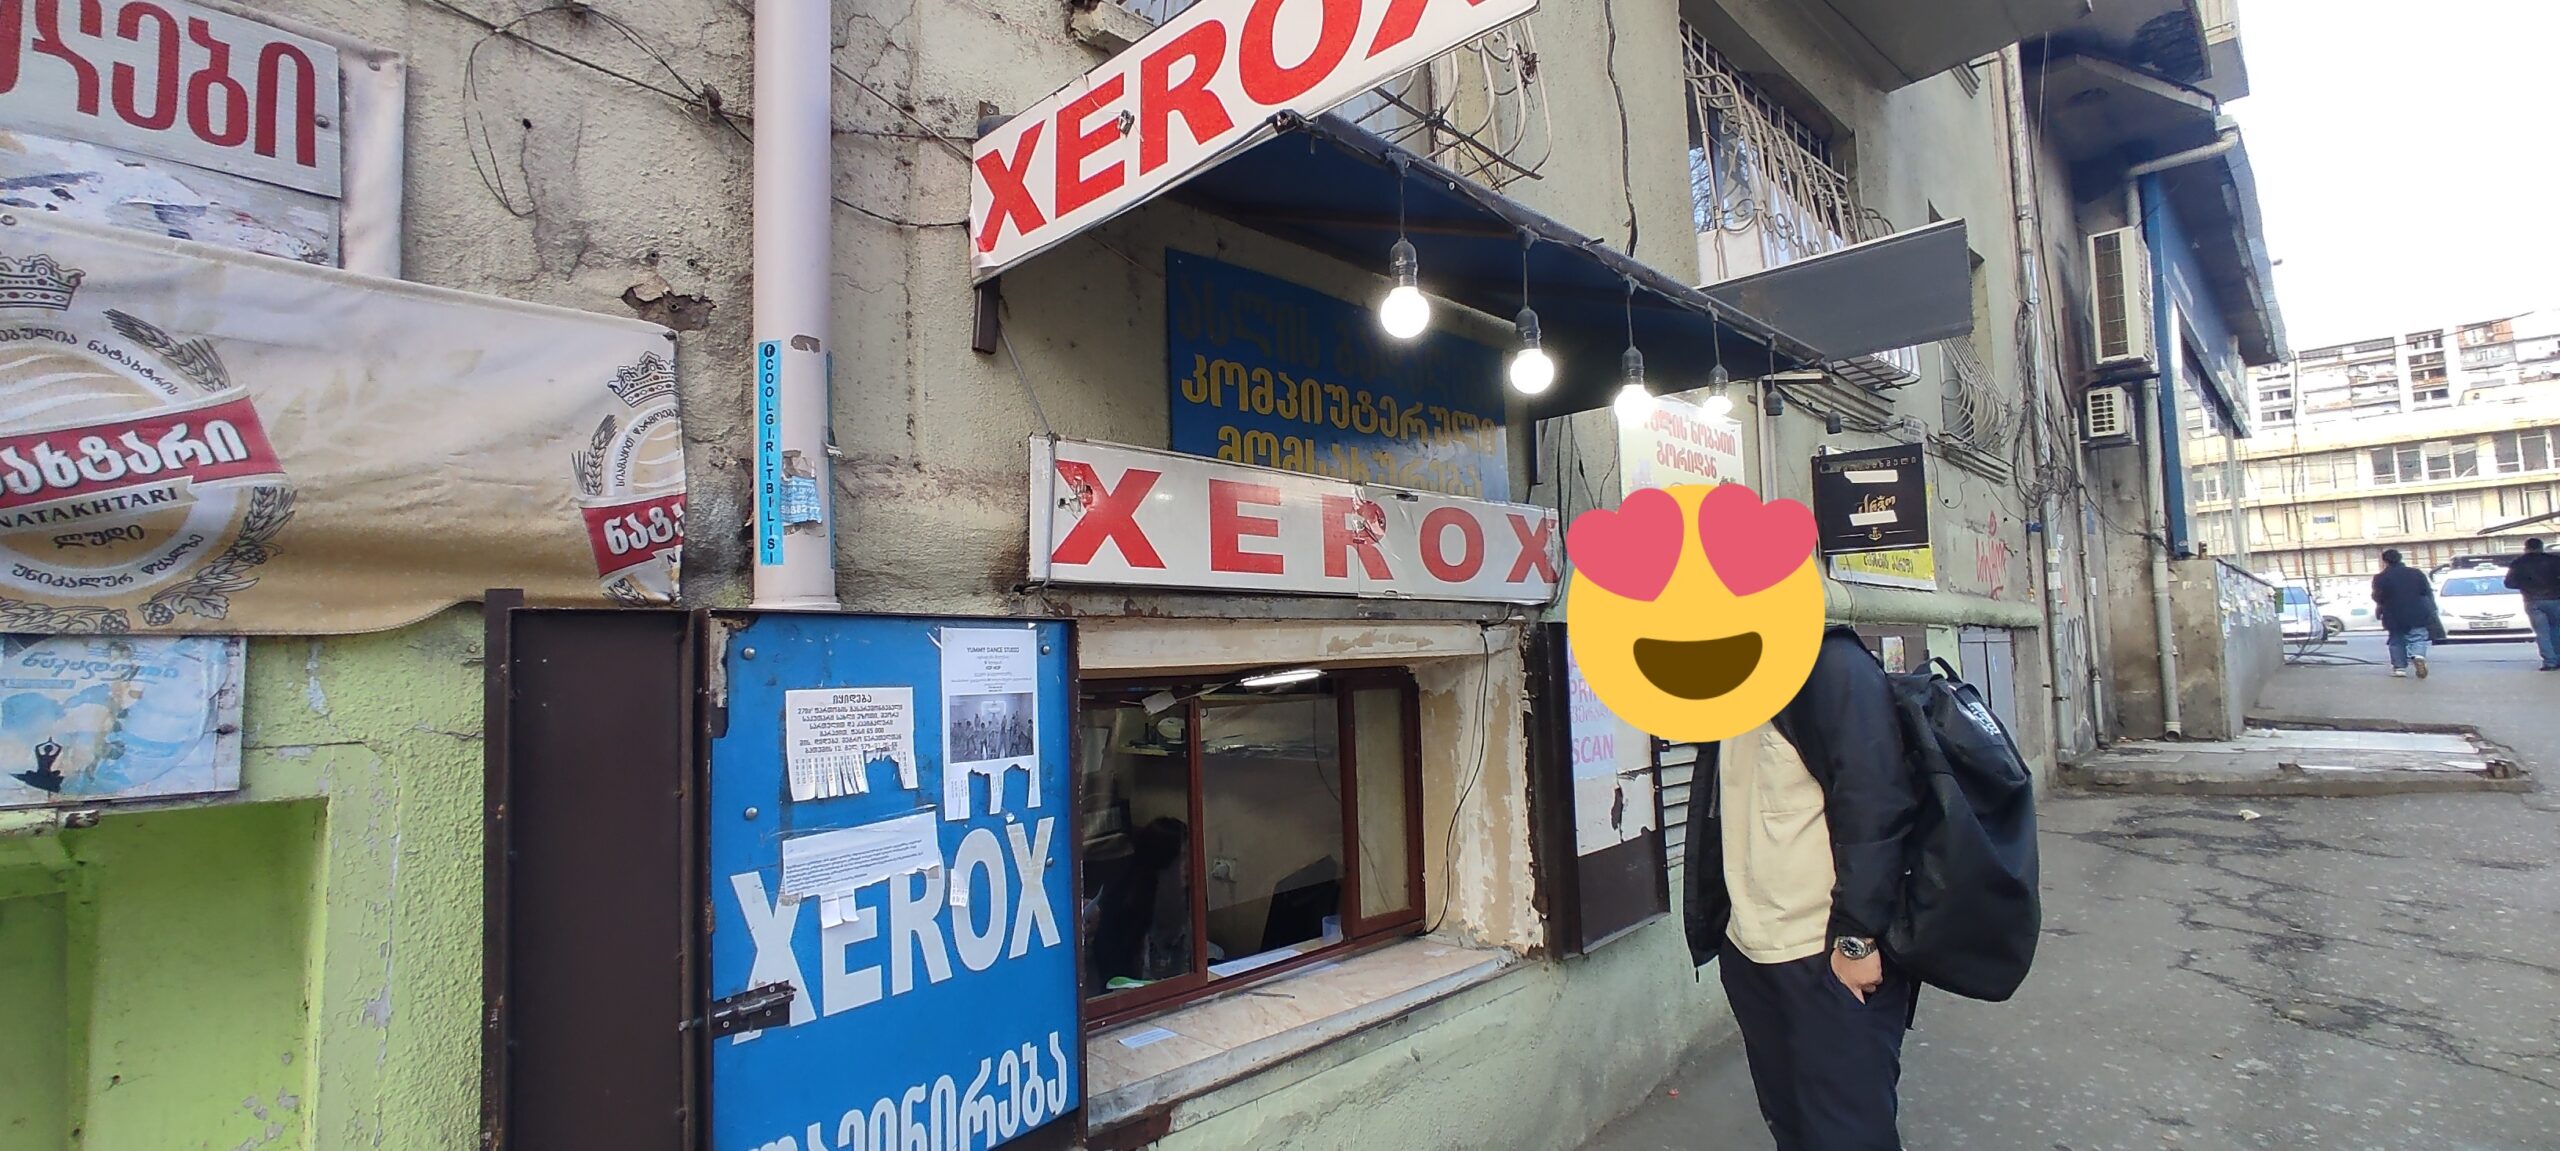 XEROX in Georgia